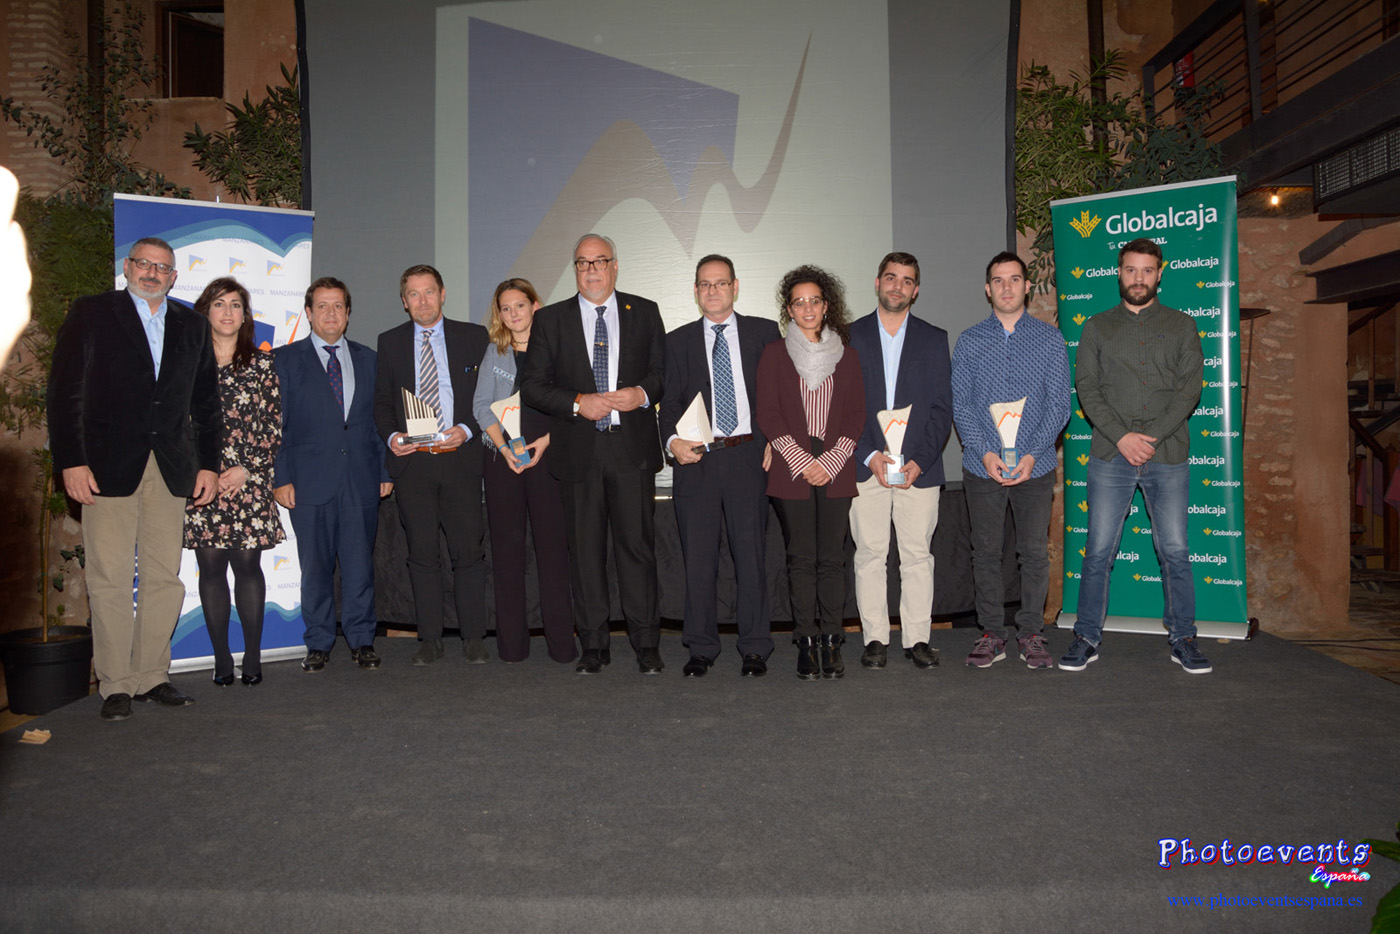 Entrega de premios VIII Jornadas Empresariales de Manzanares